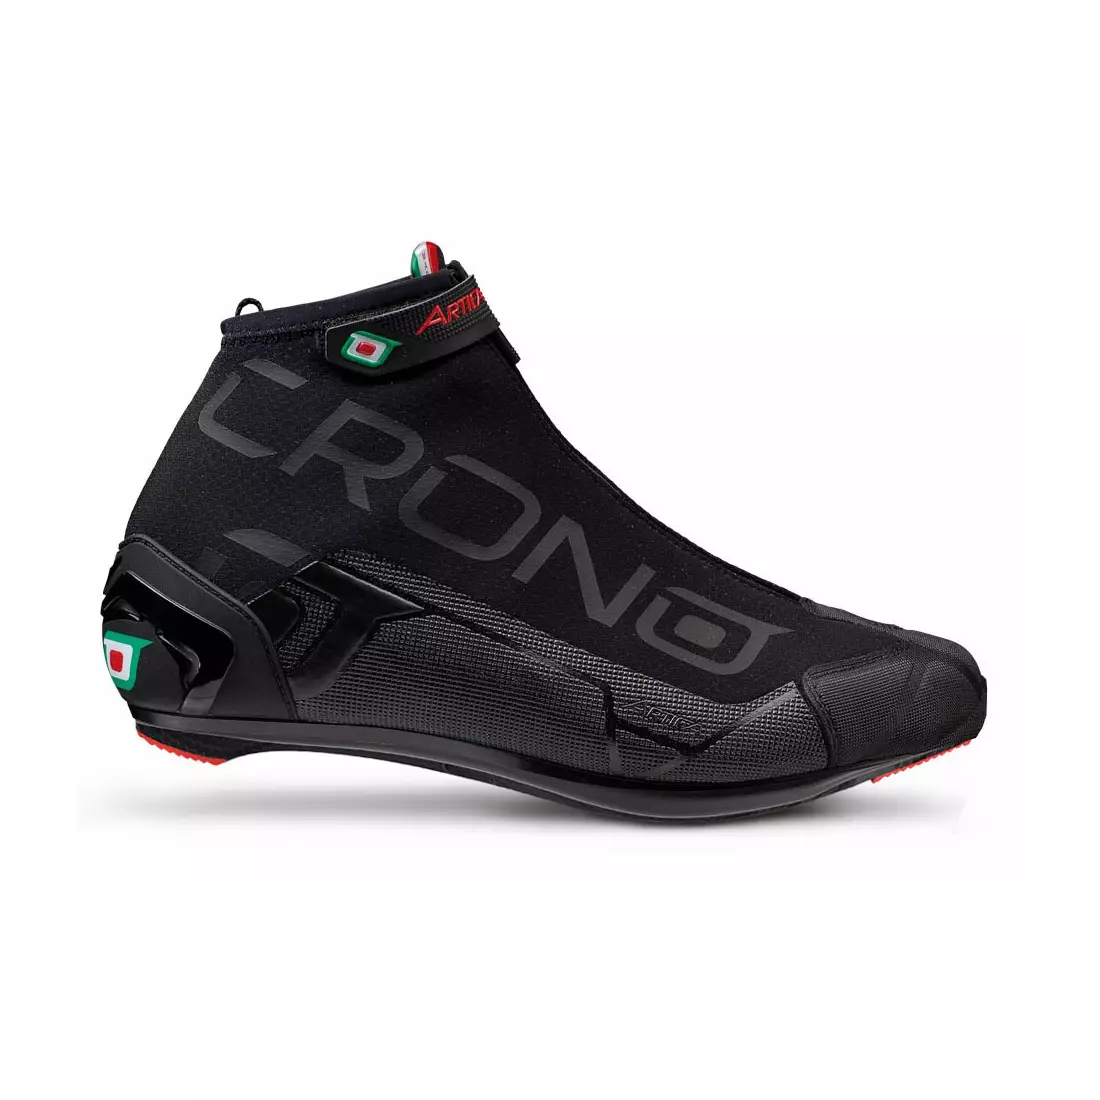 CRONO CW1 ROAD Nylon winter road cycling shoes